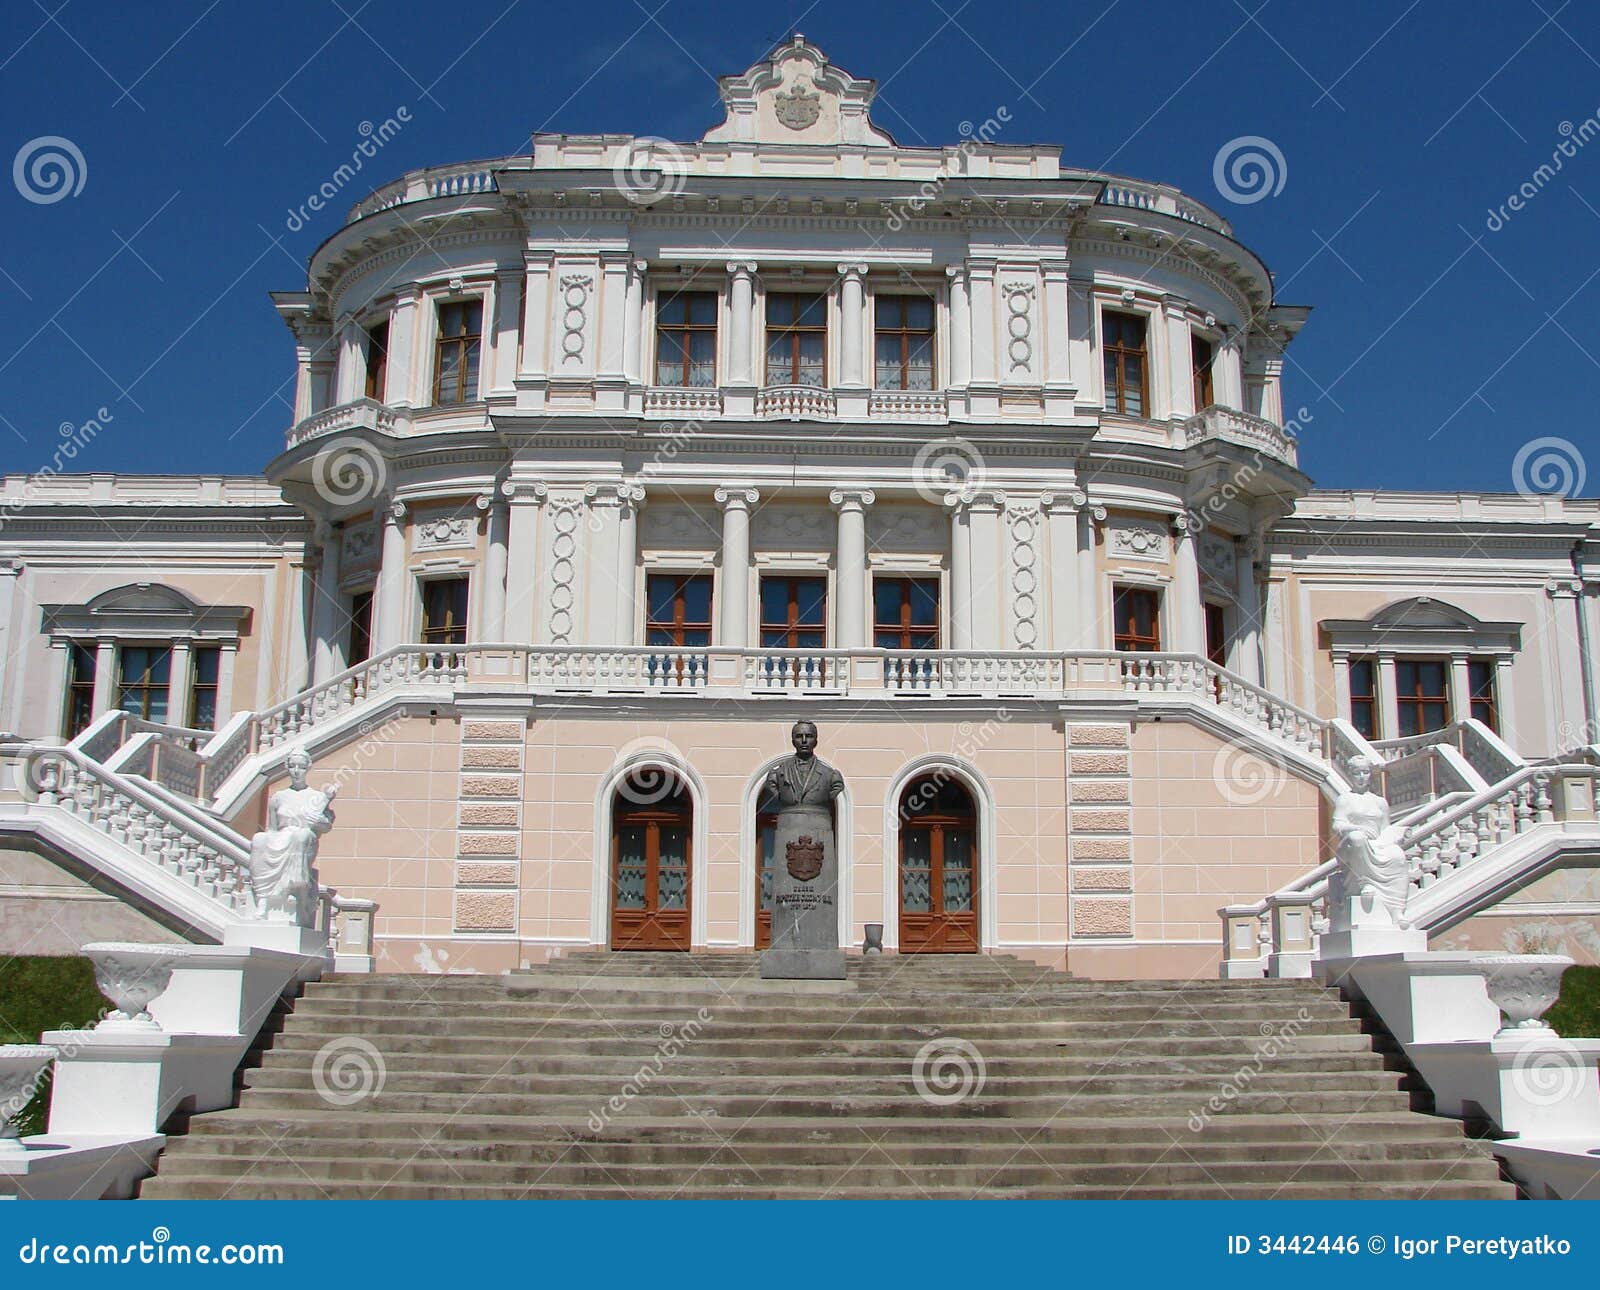 Muzeum pałacu. Niebieski miast drzwi historii pałacu zamka kursk Rosji nieba pomnikowego lata białego schodowi okno